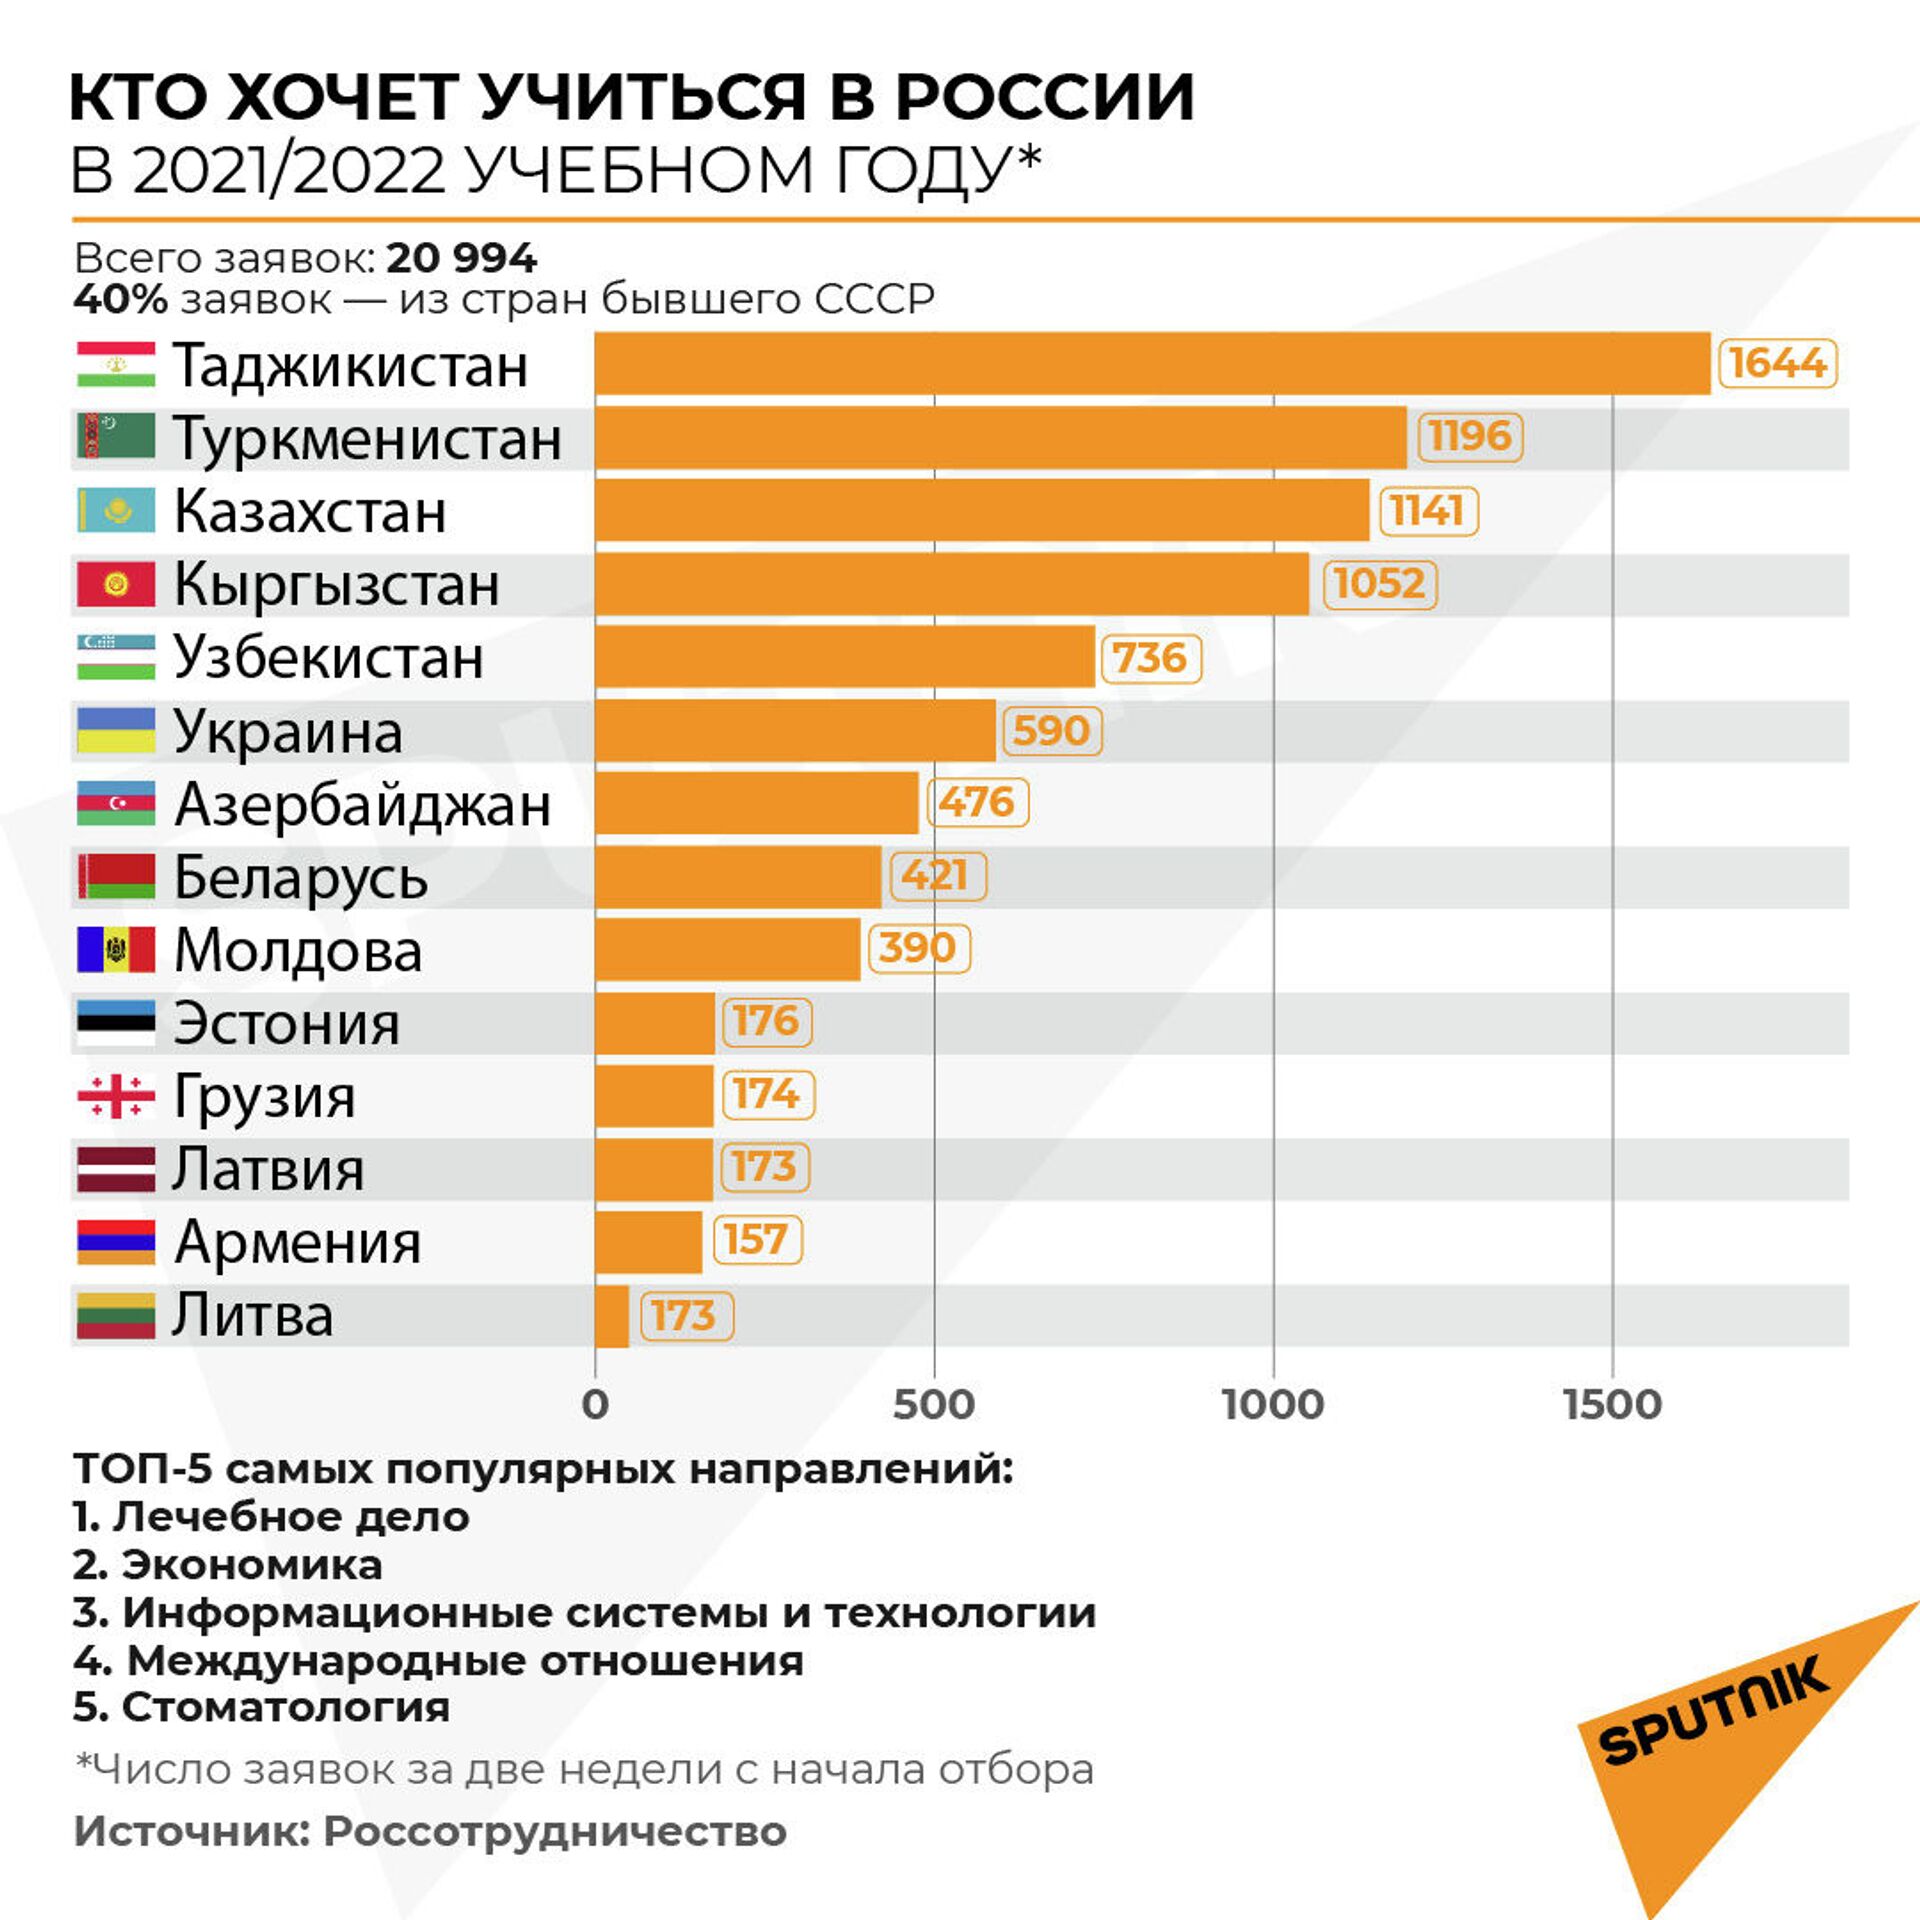 Поступить в вузы России стало легче в 5 раз: что такое суперсервис для иностранцев - Sputnik Казахстан, 1920, 09.02.2021